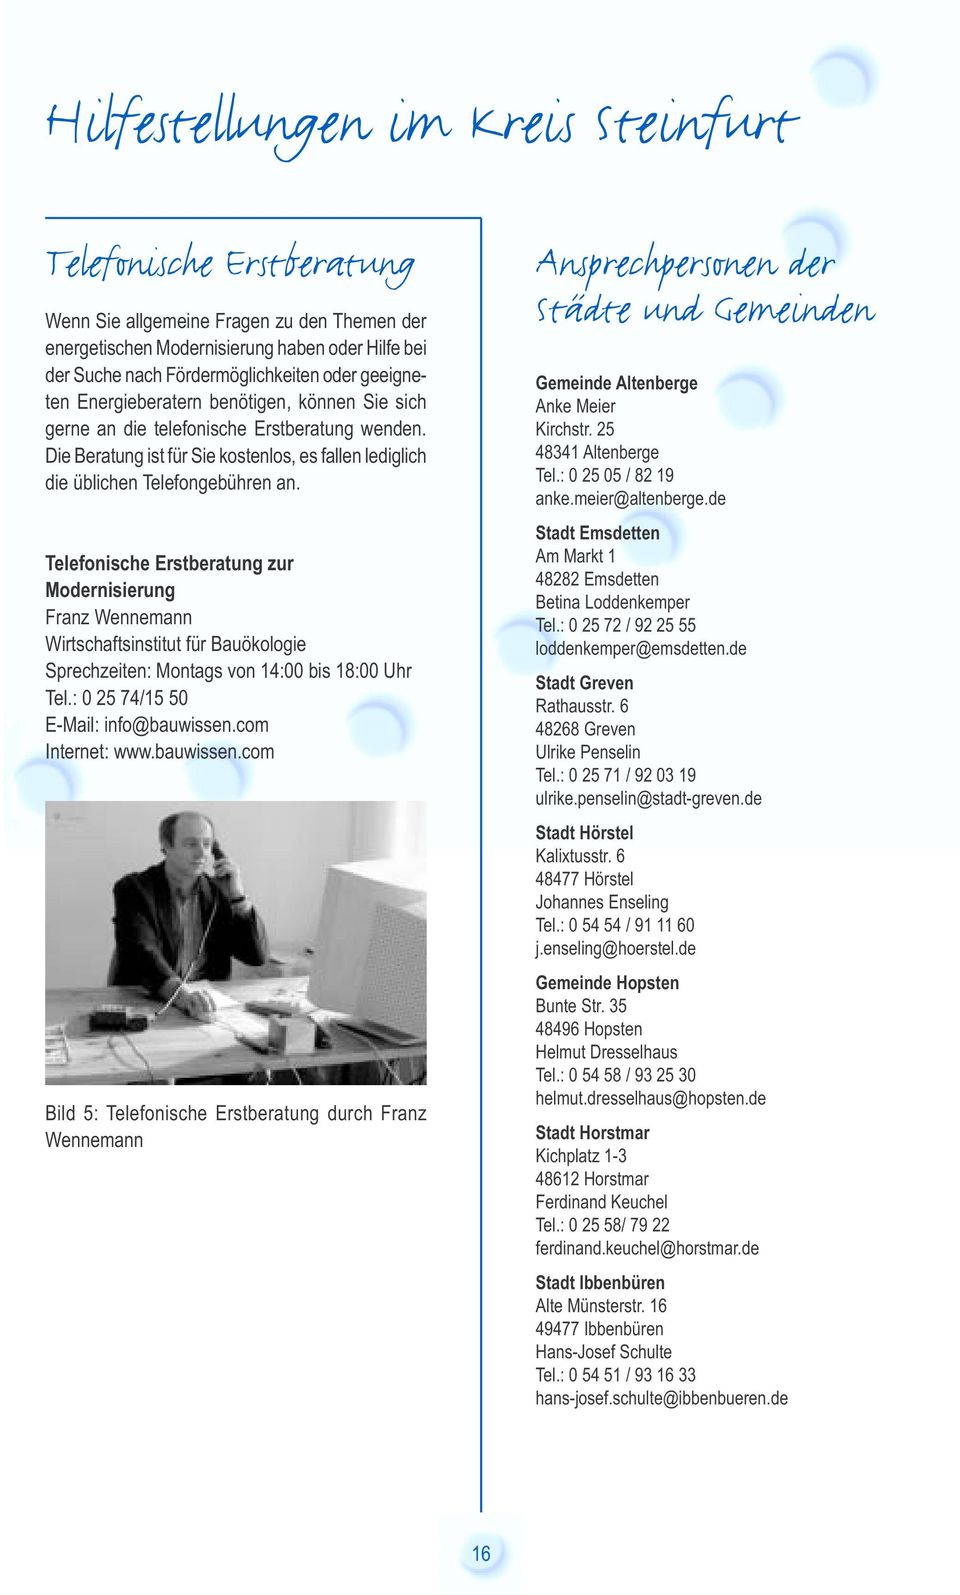 Telefonische Erstberatung zur Modernisierung Franz Wennemann Wirtschaftsinstitut für Bauökologie Sprechzeiten: Montags von 14:00 bis 18:00 Uhr Tel.: 0 25 74/15 50 E-Mail: info@bauwissen.